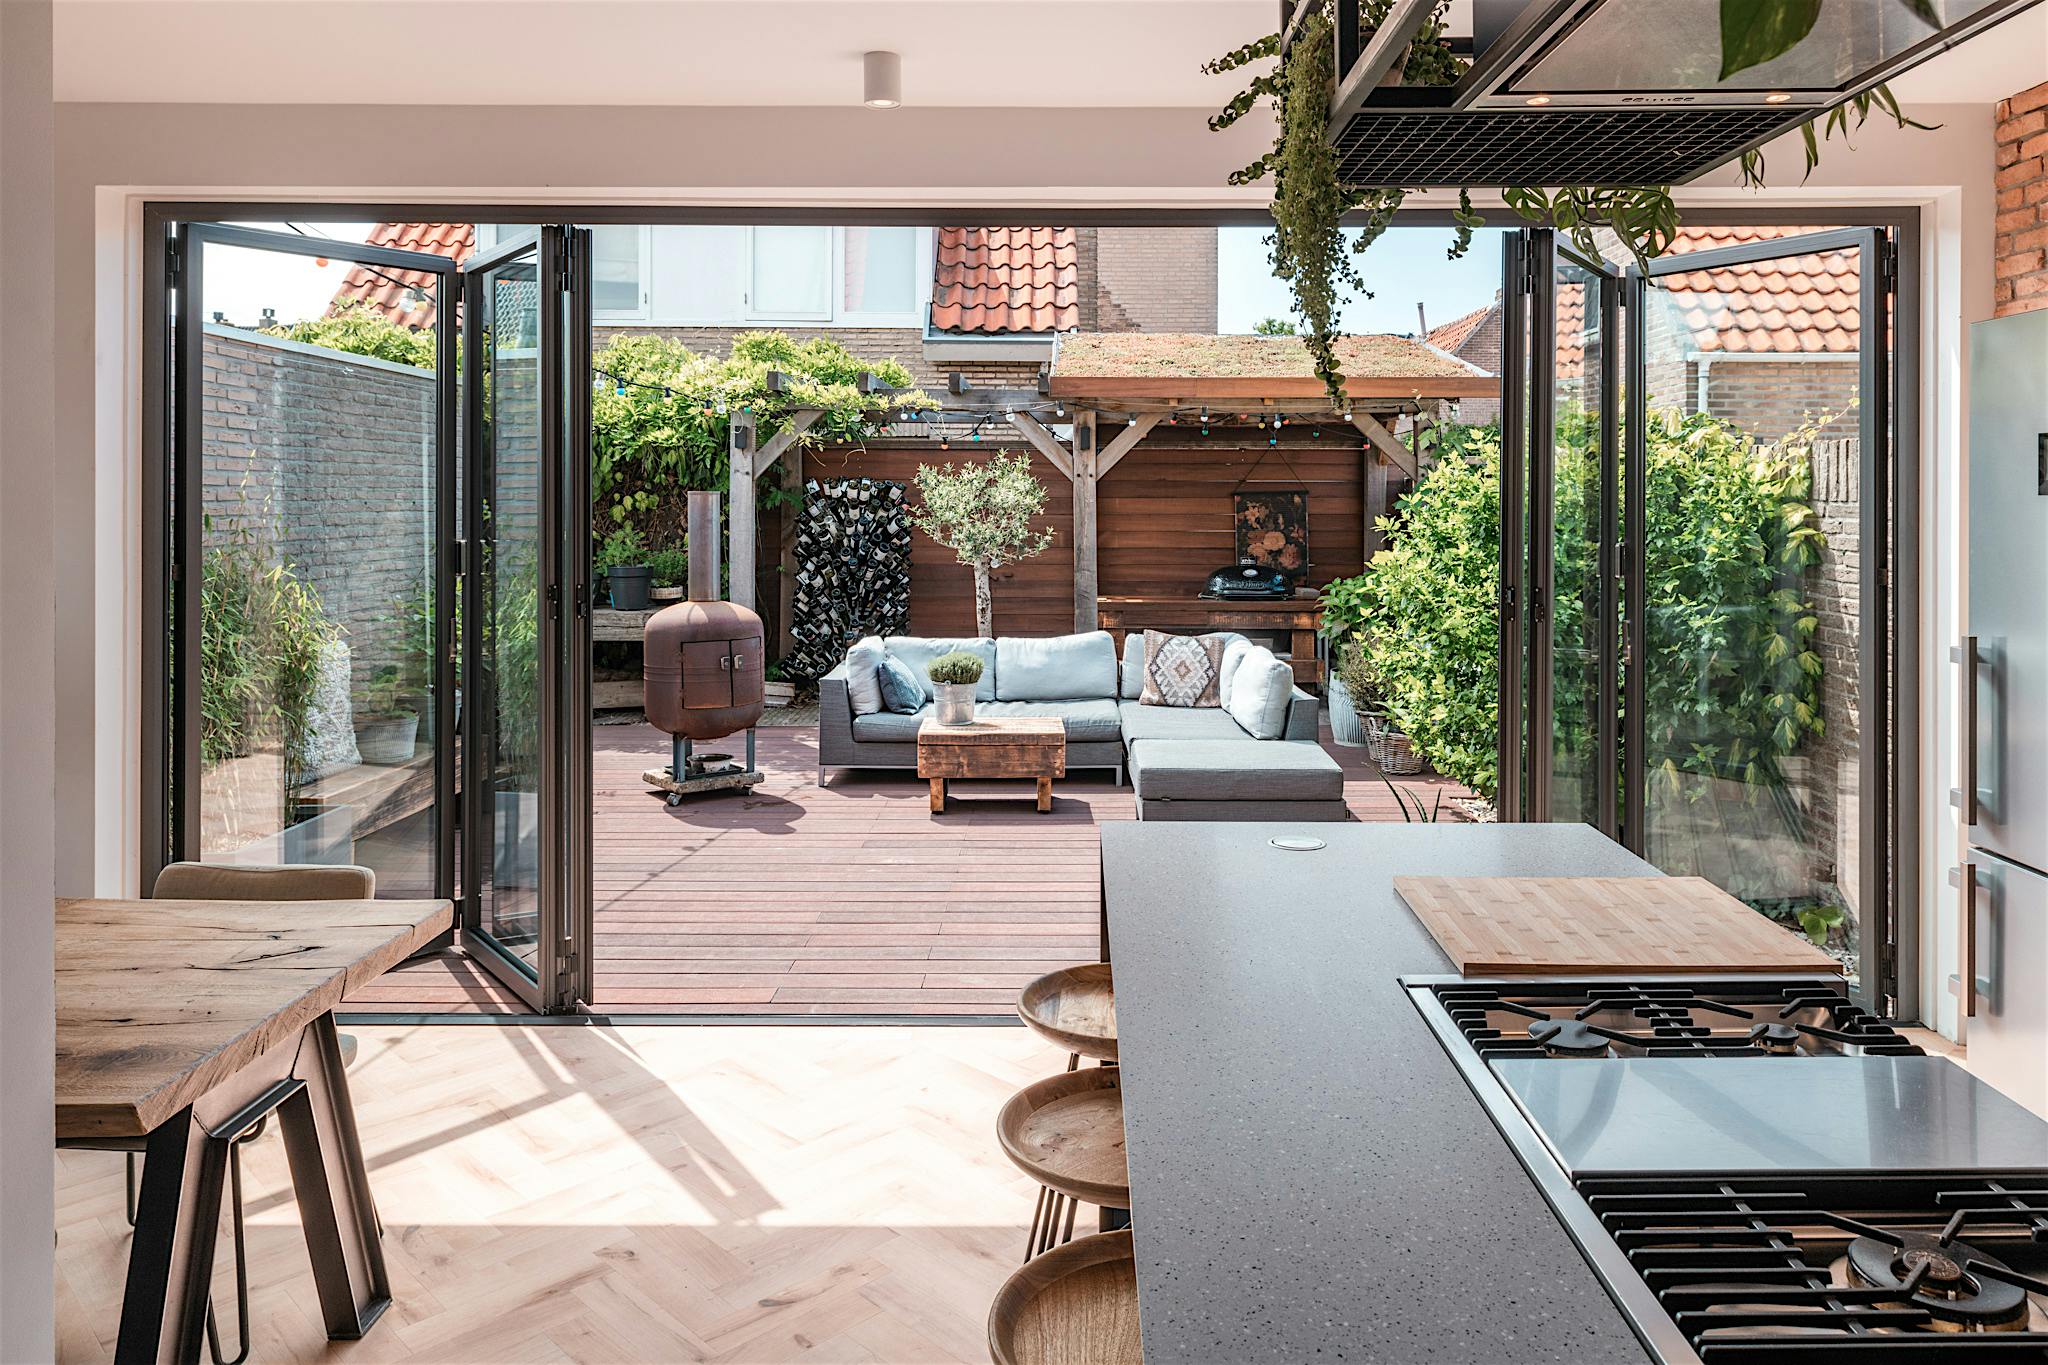 opening glass patio doors create outdoor lounge